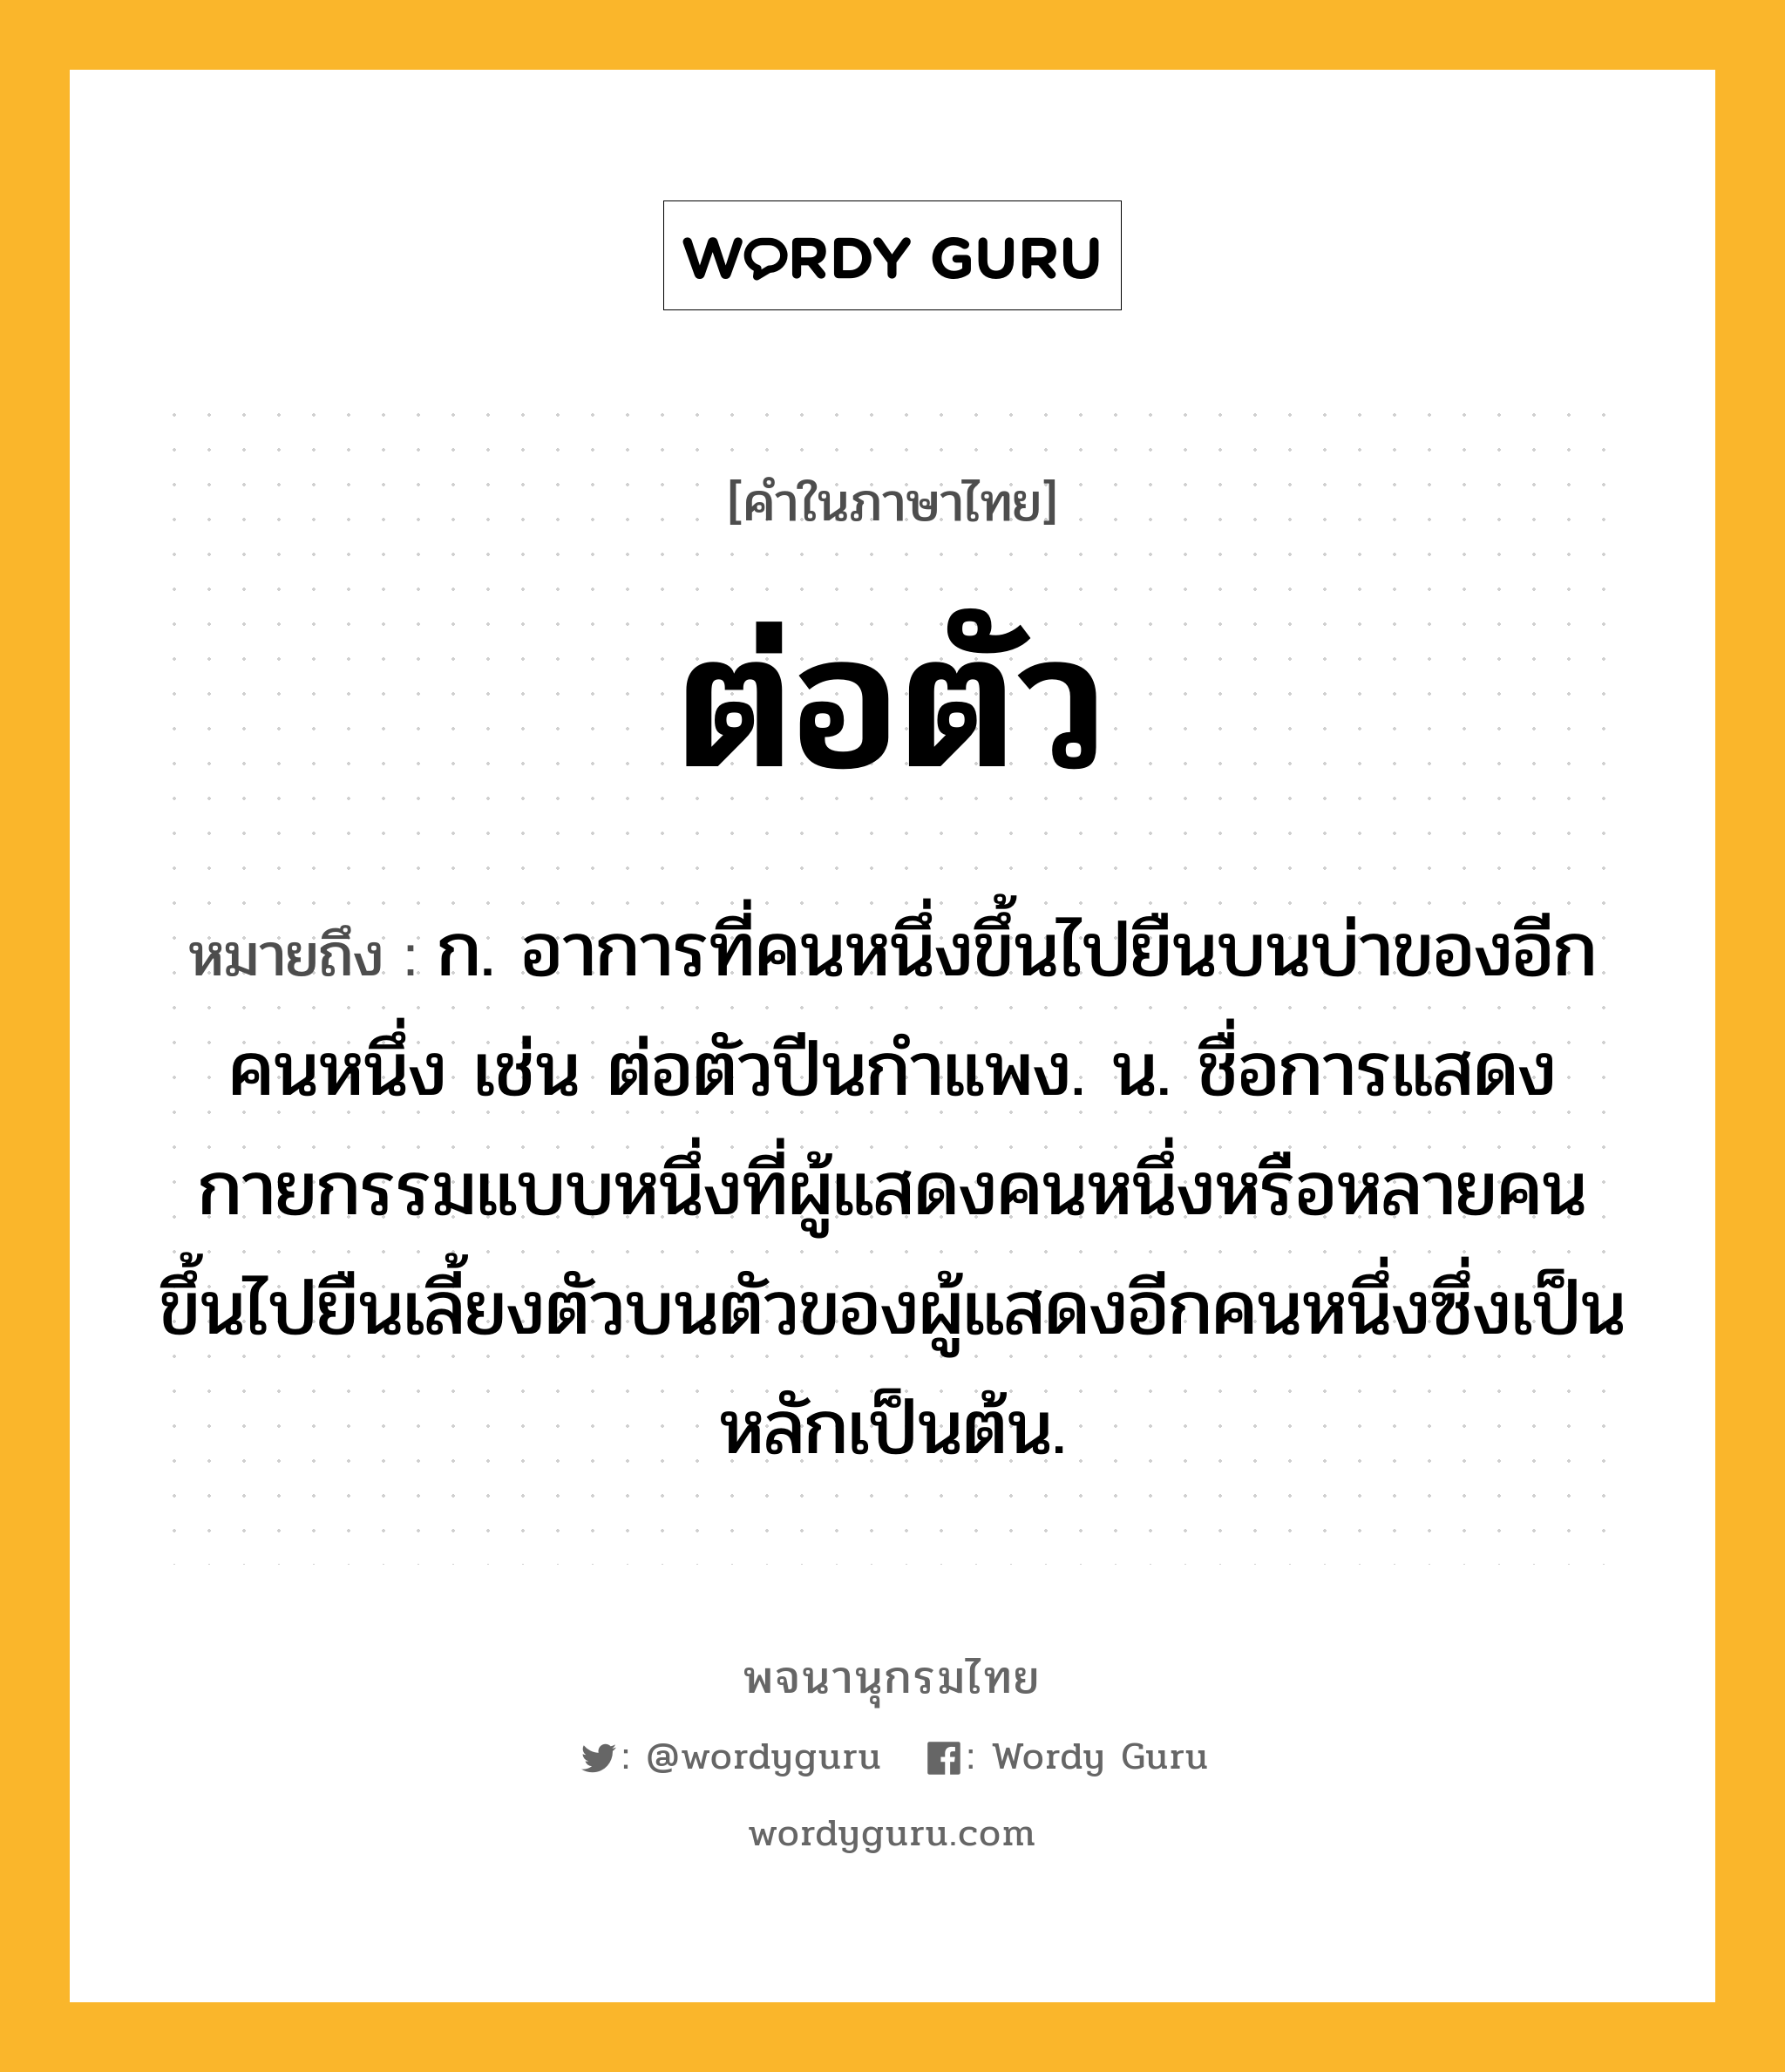 ต่อตัว ความหมาย หมายถึงอะไร?, คำในภาษาไทย ต่อตัว หมายถึง ก. อาการที่คนหนึ่งขึ้นไปยืนบนบ่าของอีกคนหนึ่ง เช่น ต่อตัวปีนกำแพง. น. ชื่อการแสดงกายกรรมแบบหนึ่งที่ผู้แสดงคนหนึ่งหรือหลายคนขึ้นไปยืนเลี้ยงตัวบนตัวของผู้แสดงอีกคนหนึ่งซึ่งเป็นหลักเป็นต้น.